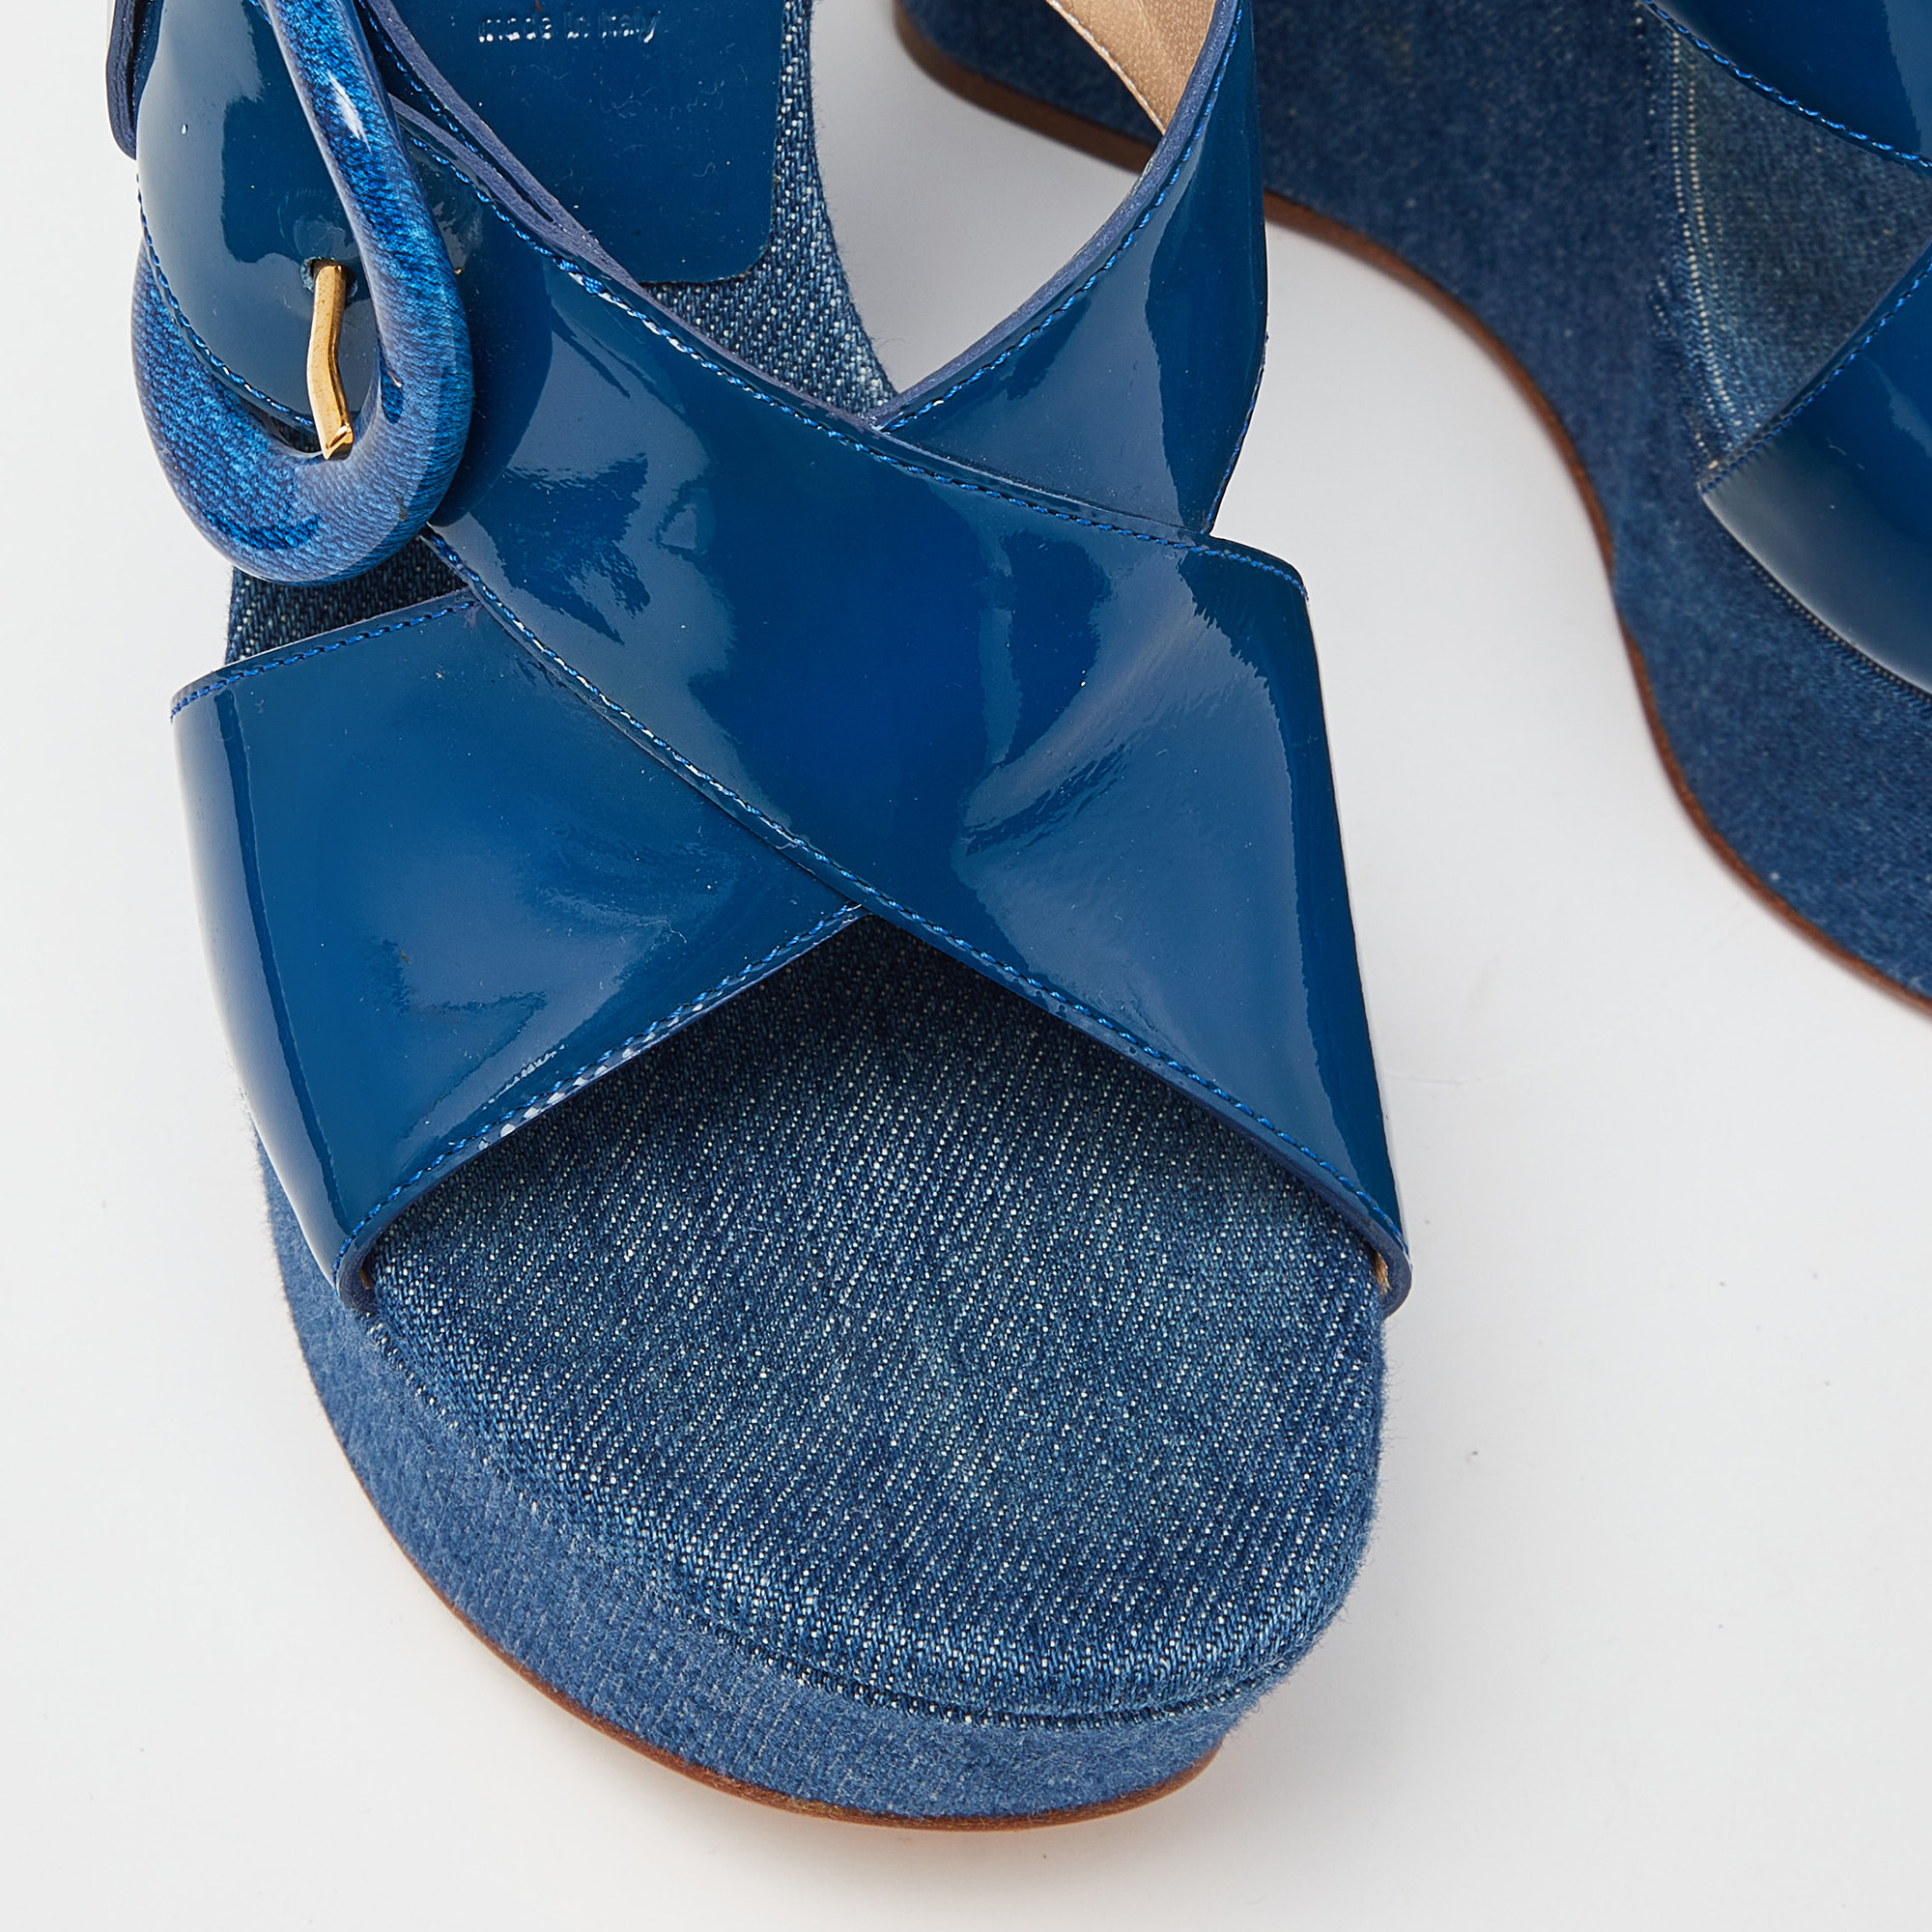 Casadei Blue Patent Leather Wedge Platform Slide Sandals Size 38